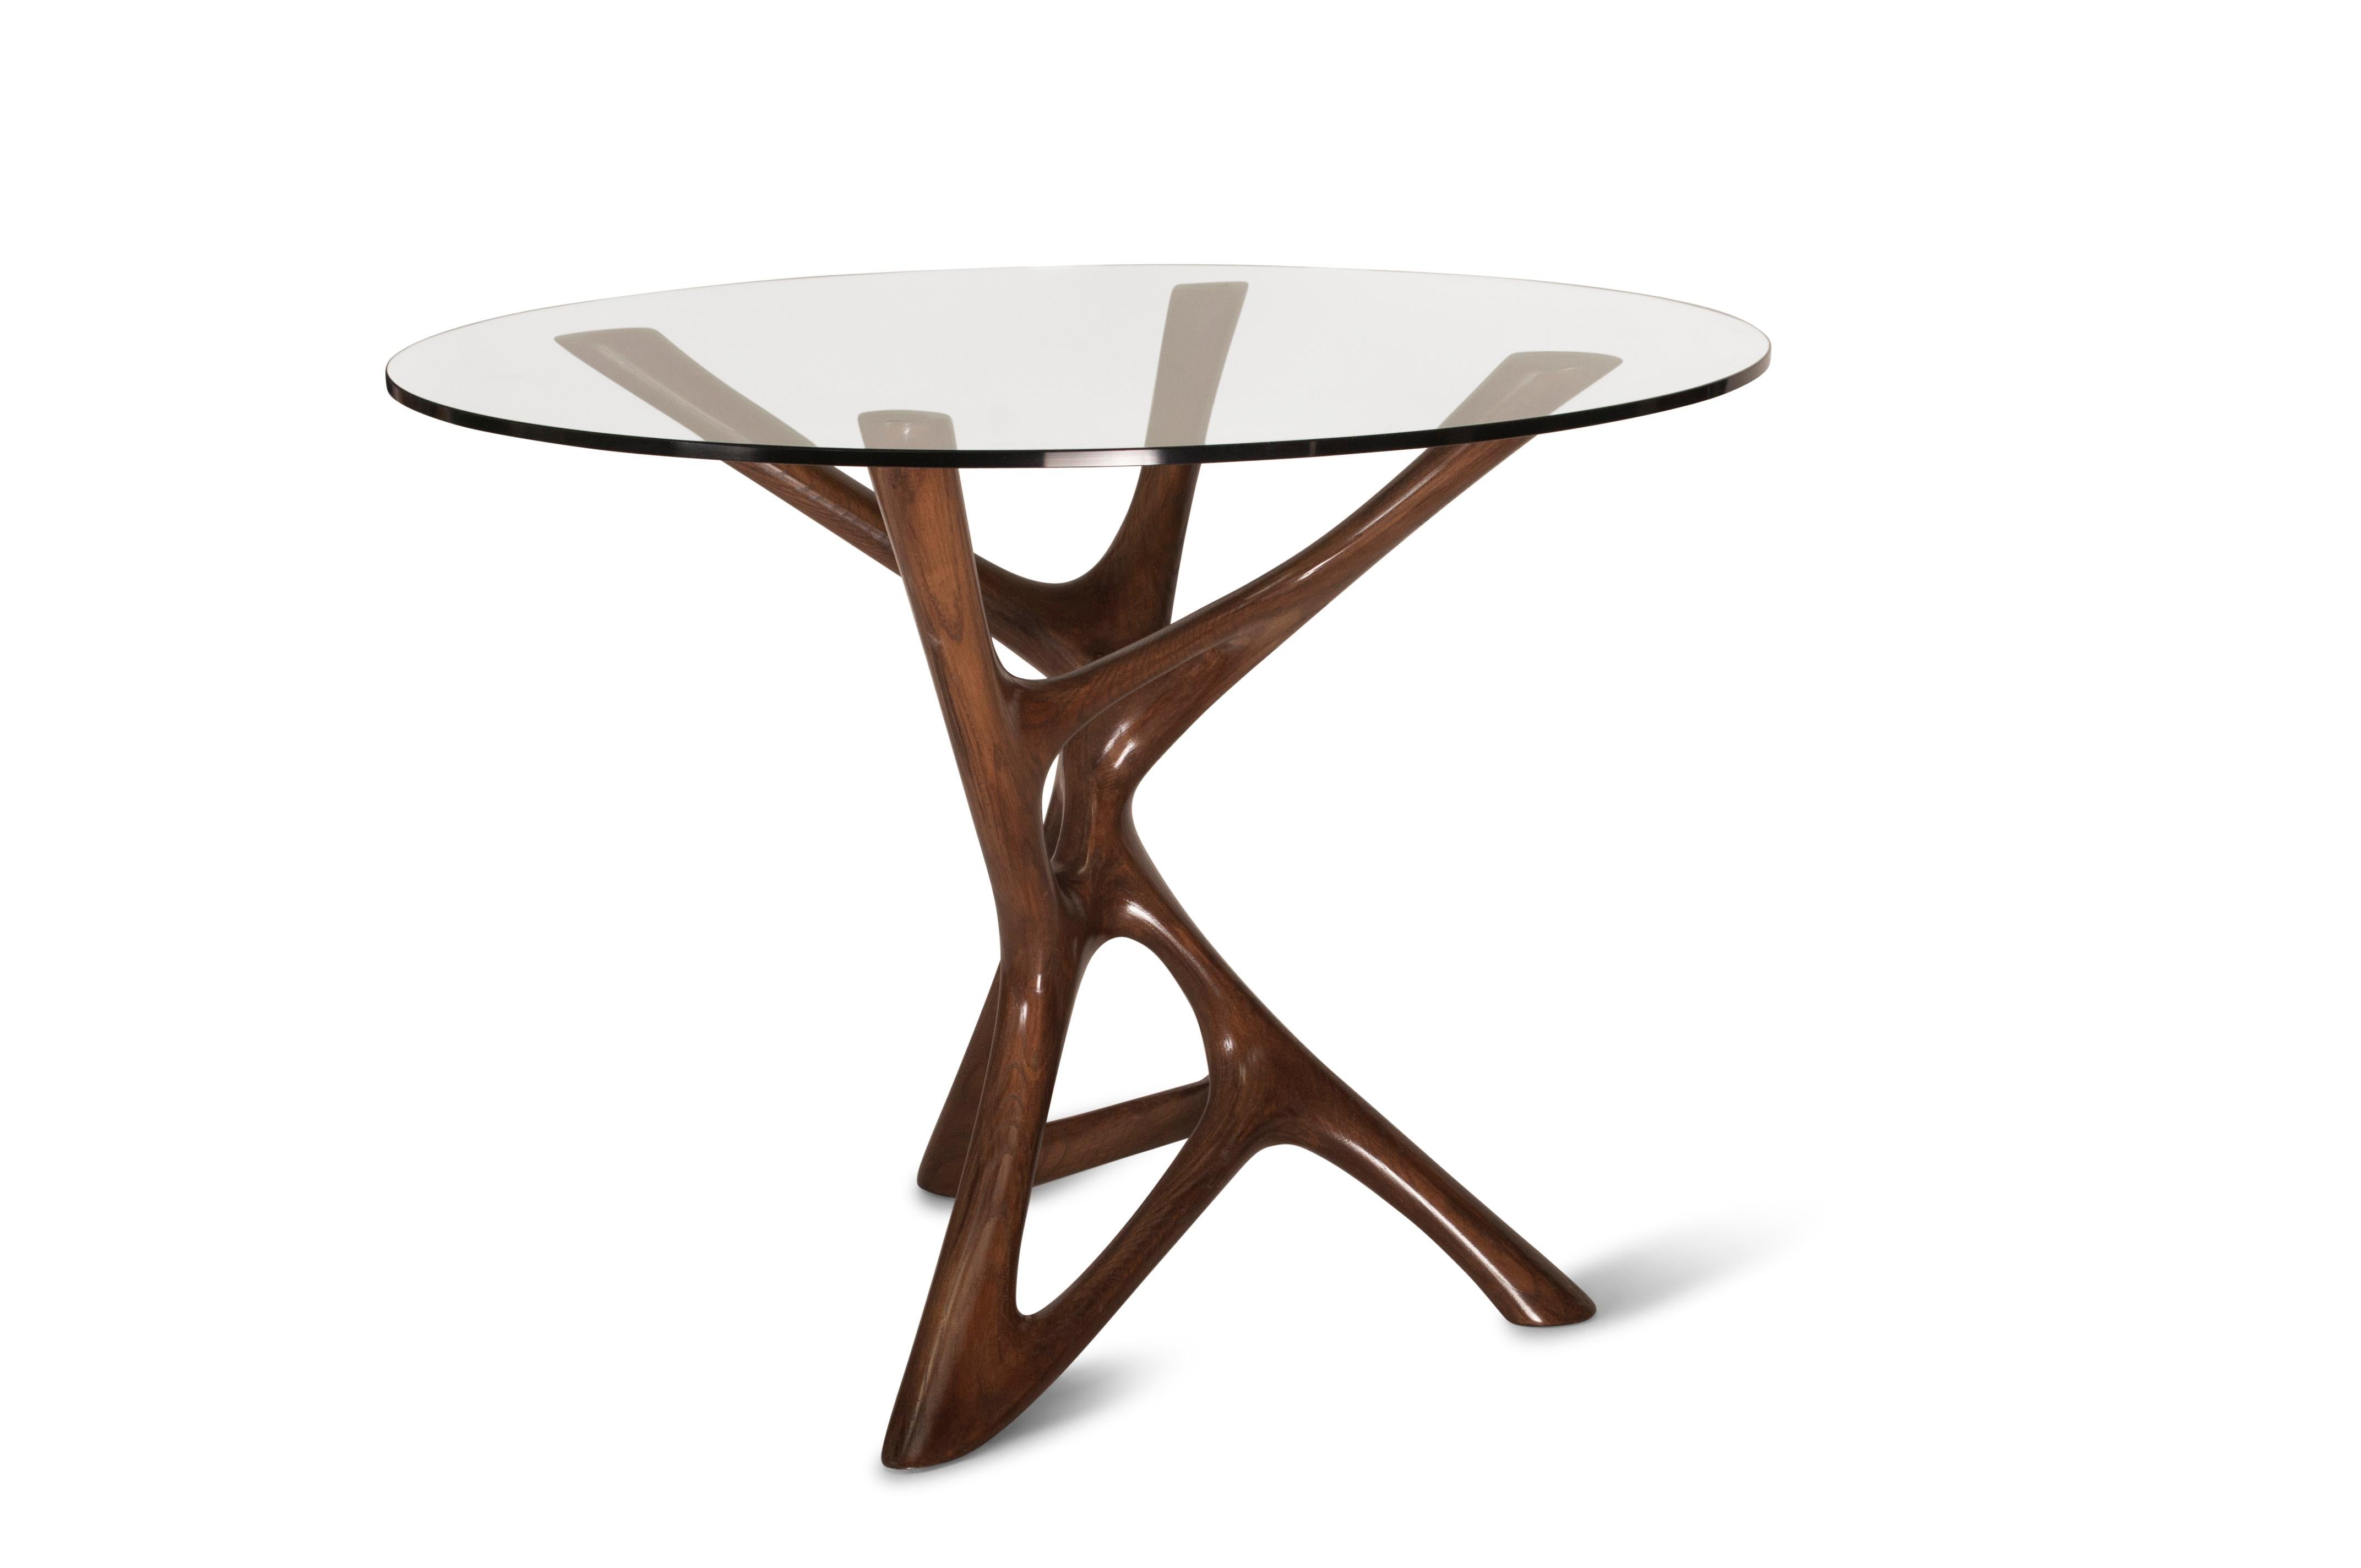 Ava Center Table ist ein einzigartiger skulpturaler Tisch, der von Amorph entworfen und hergestellt wurde. Die Oberfläche ist unser einzigartiges Gold-Finish. Die Basis Dimension ist 25